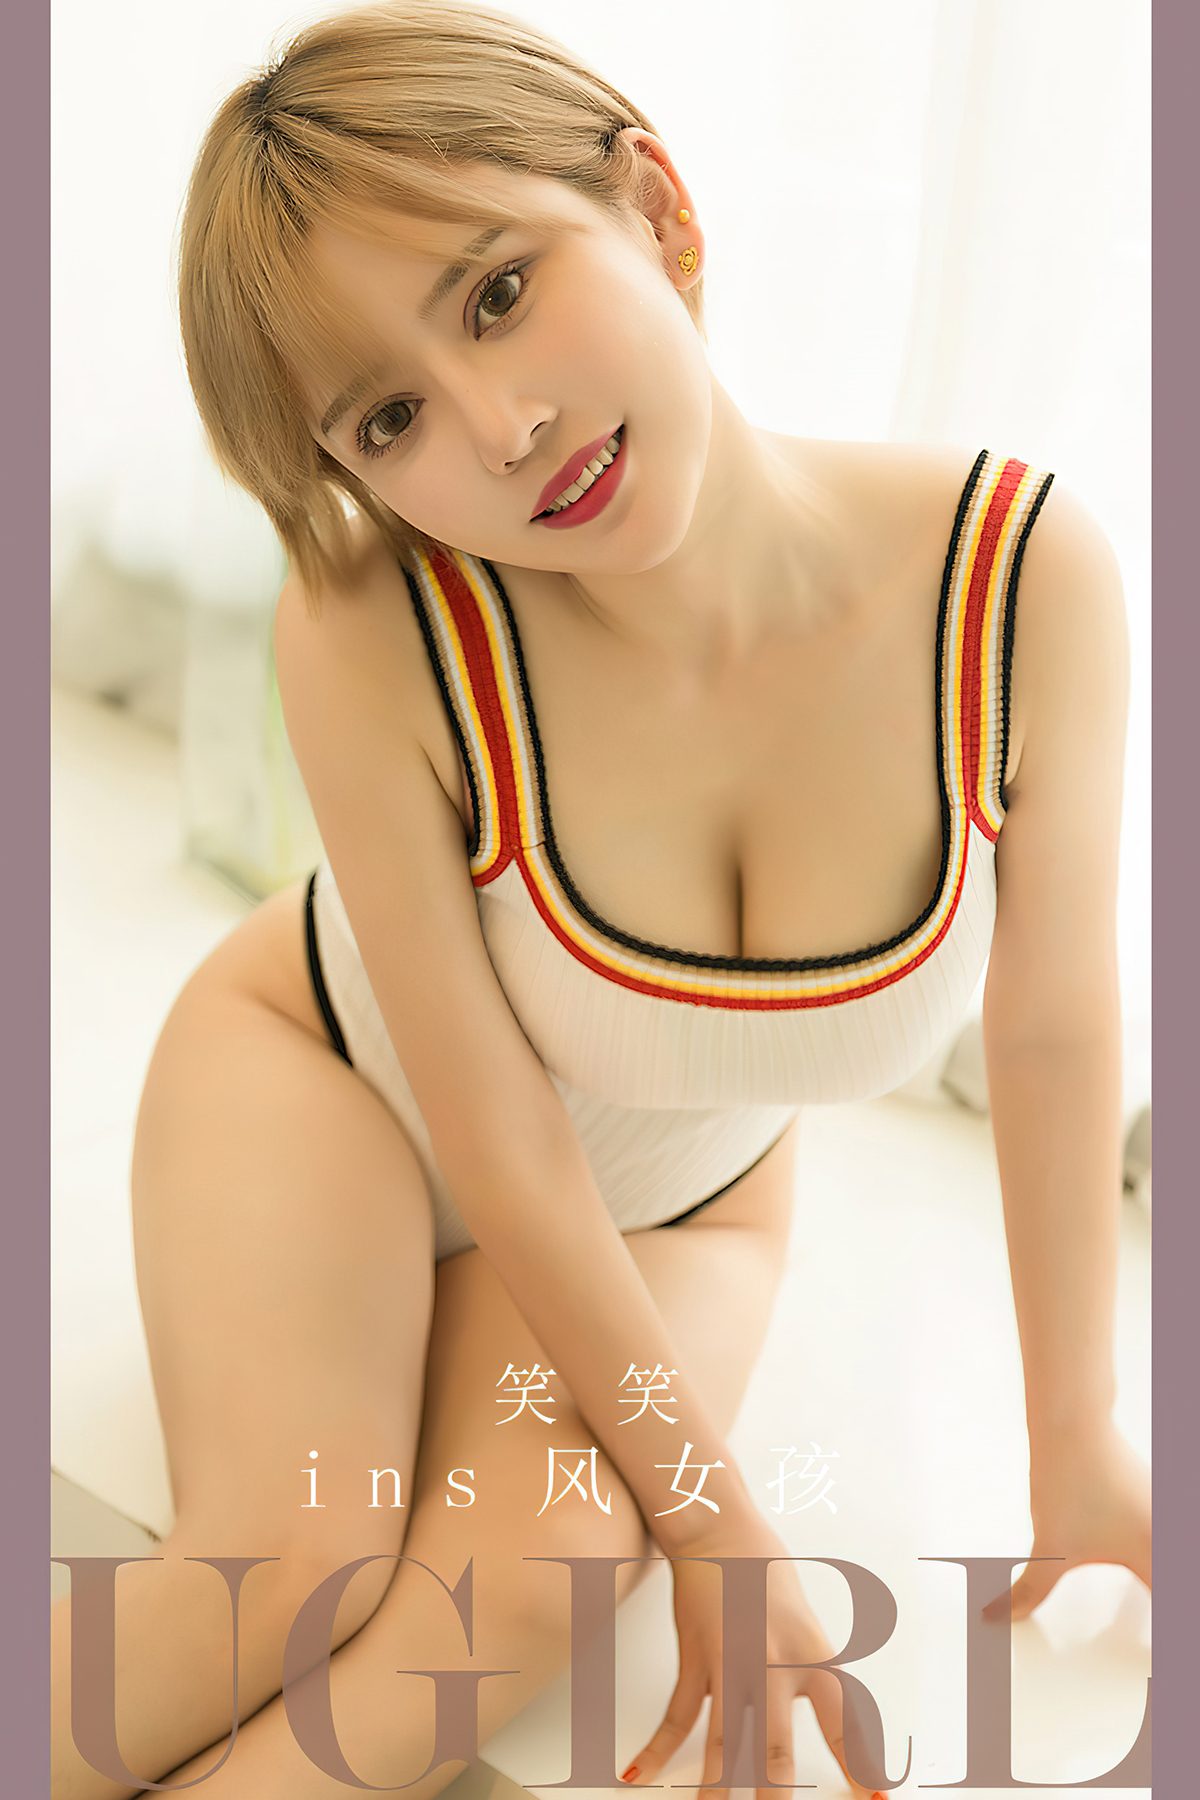 Ugirls App尤果圈 No 2700 Xiao Xiao 0032 1911021055.jpg